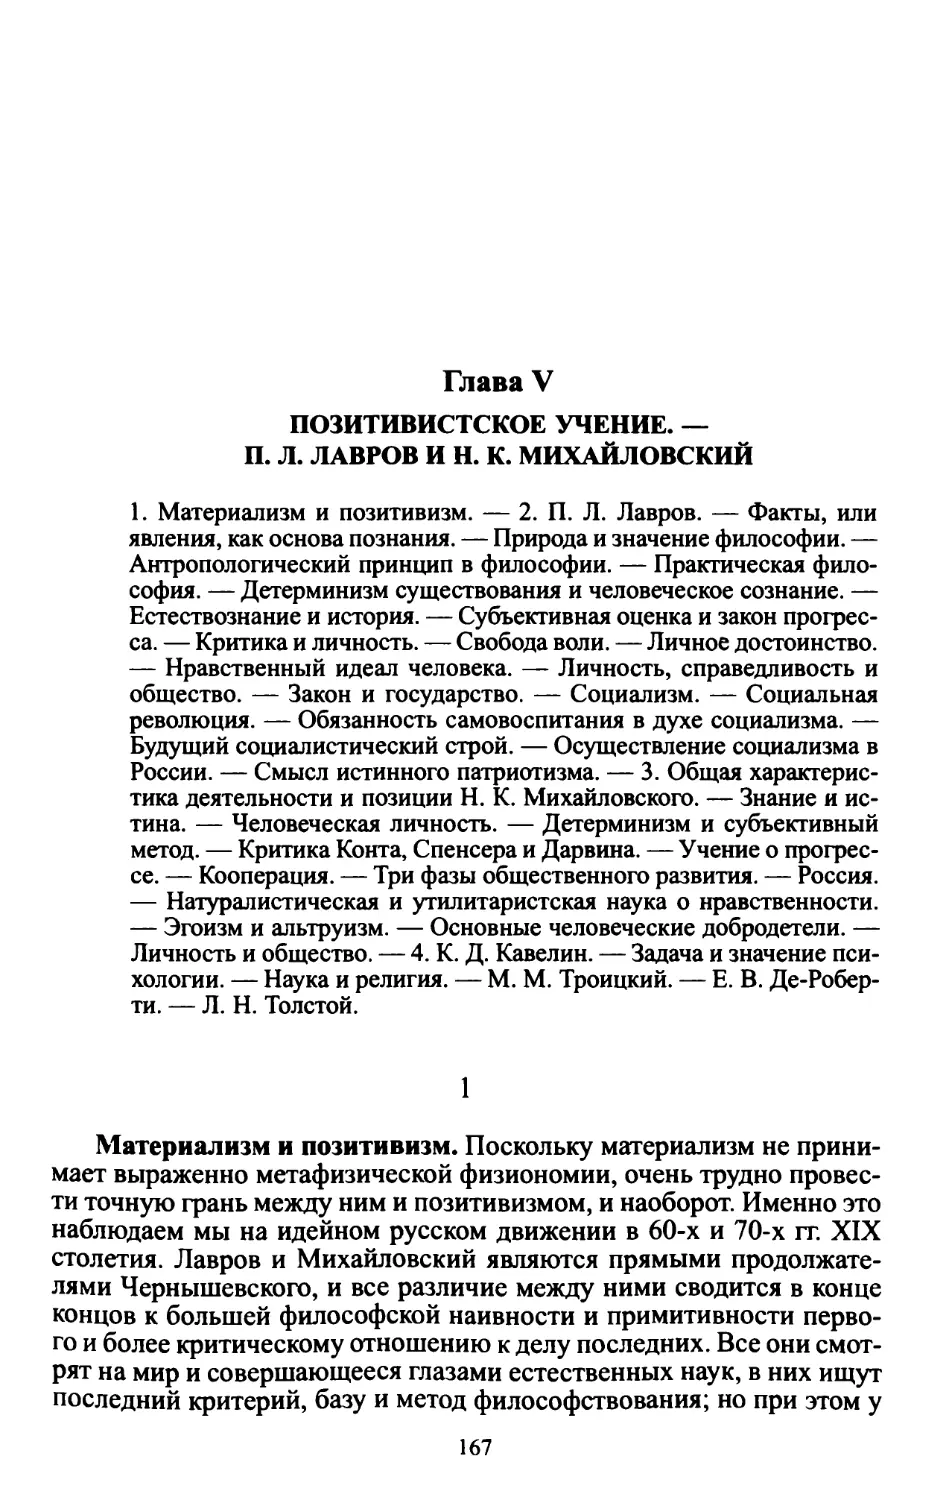 Глава V. Позитивистское учение. – П.Л. Лавров и Н.К. Михайловский